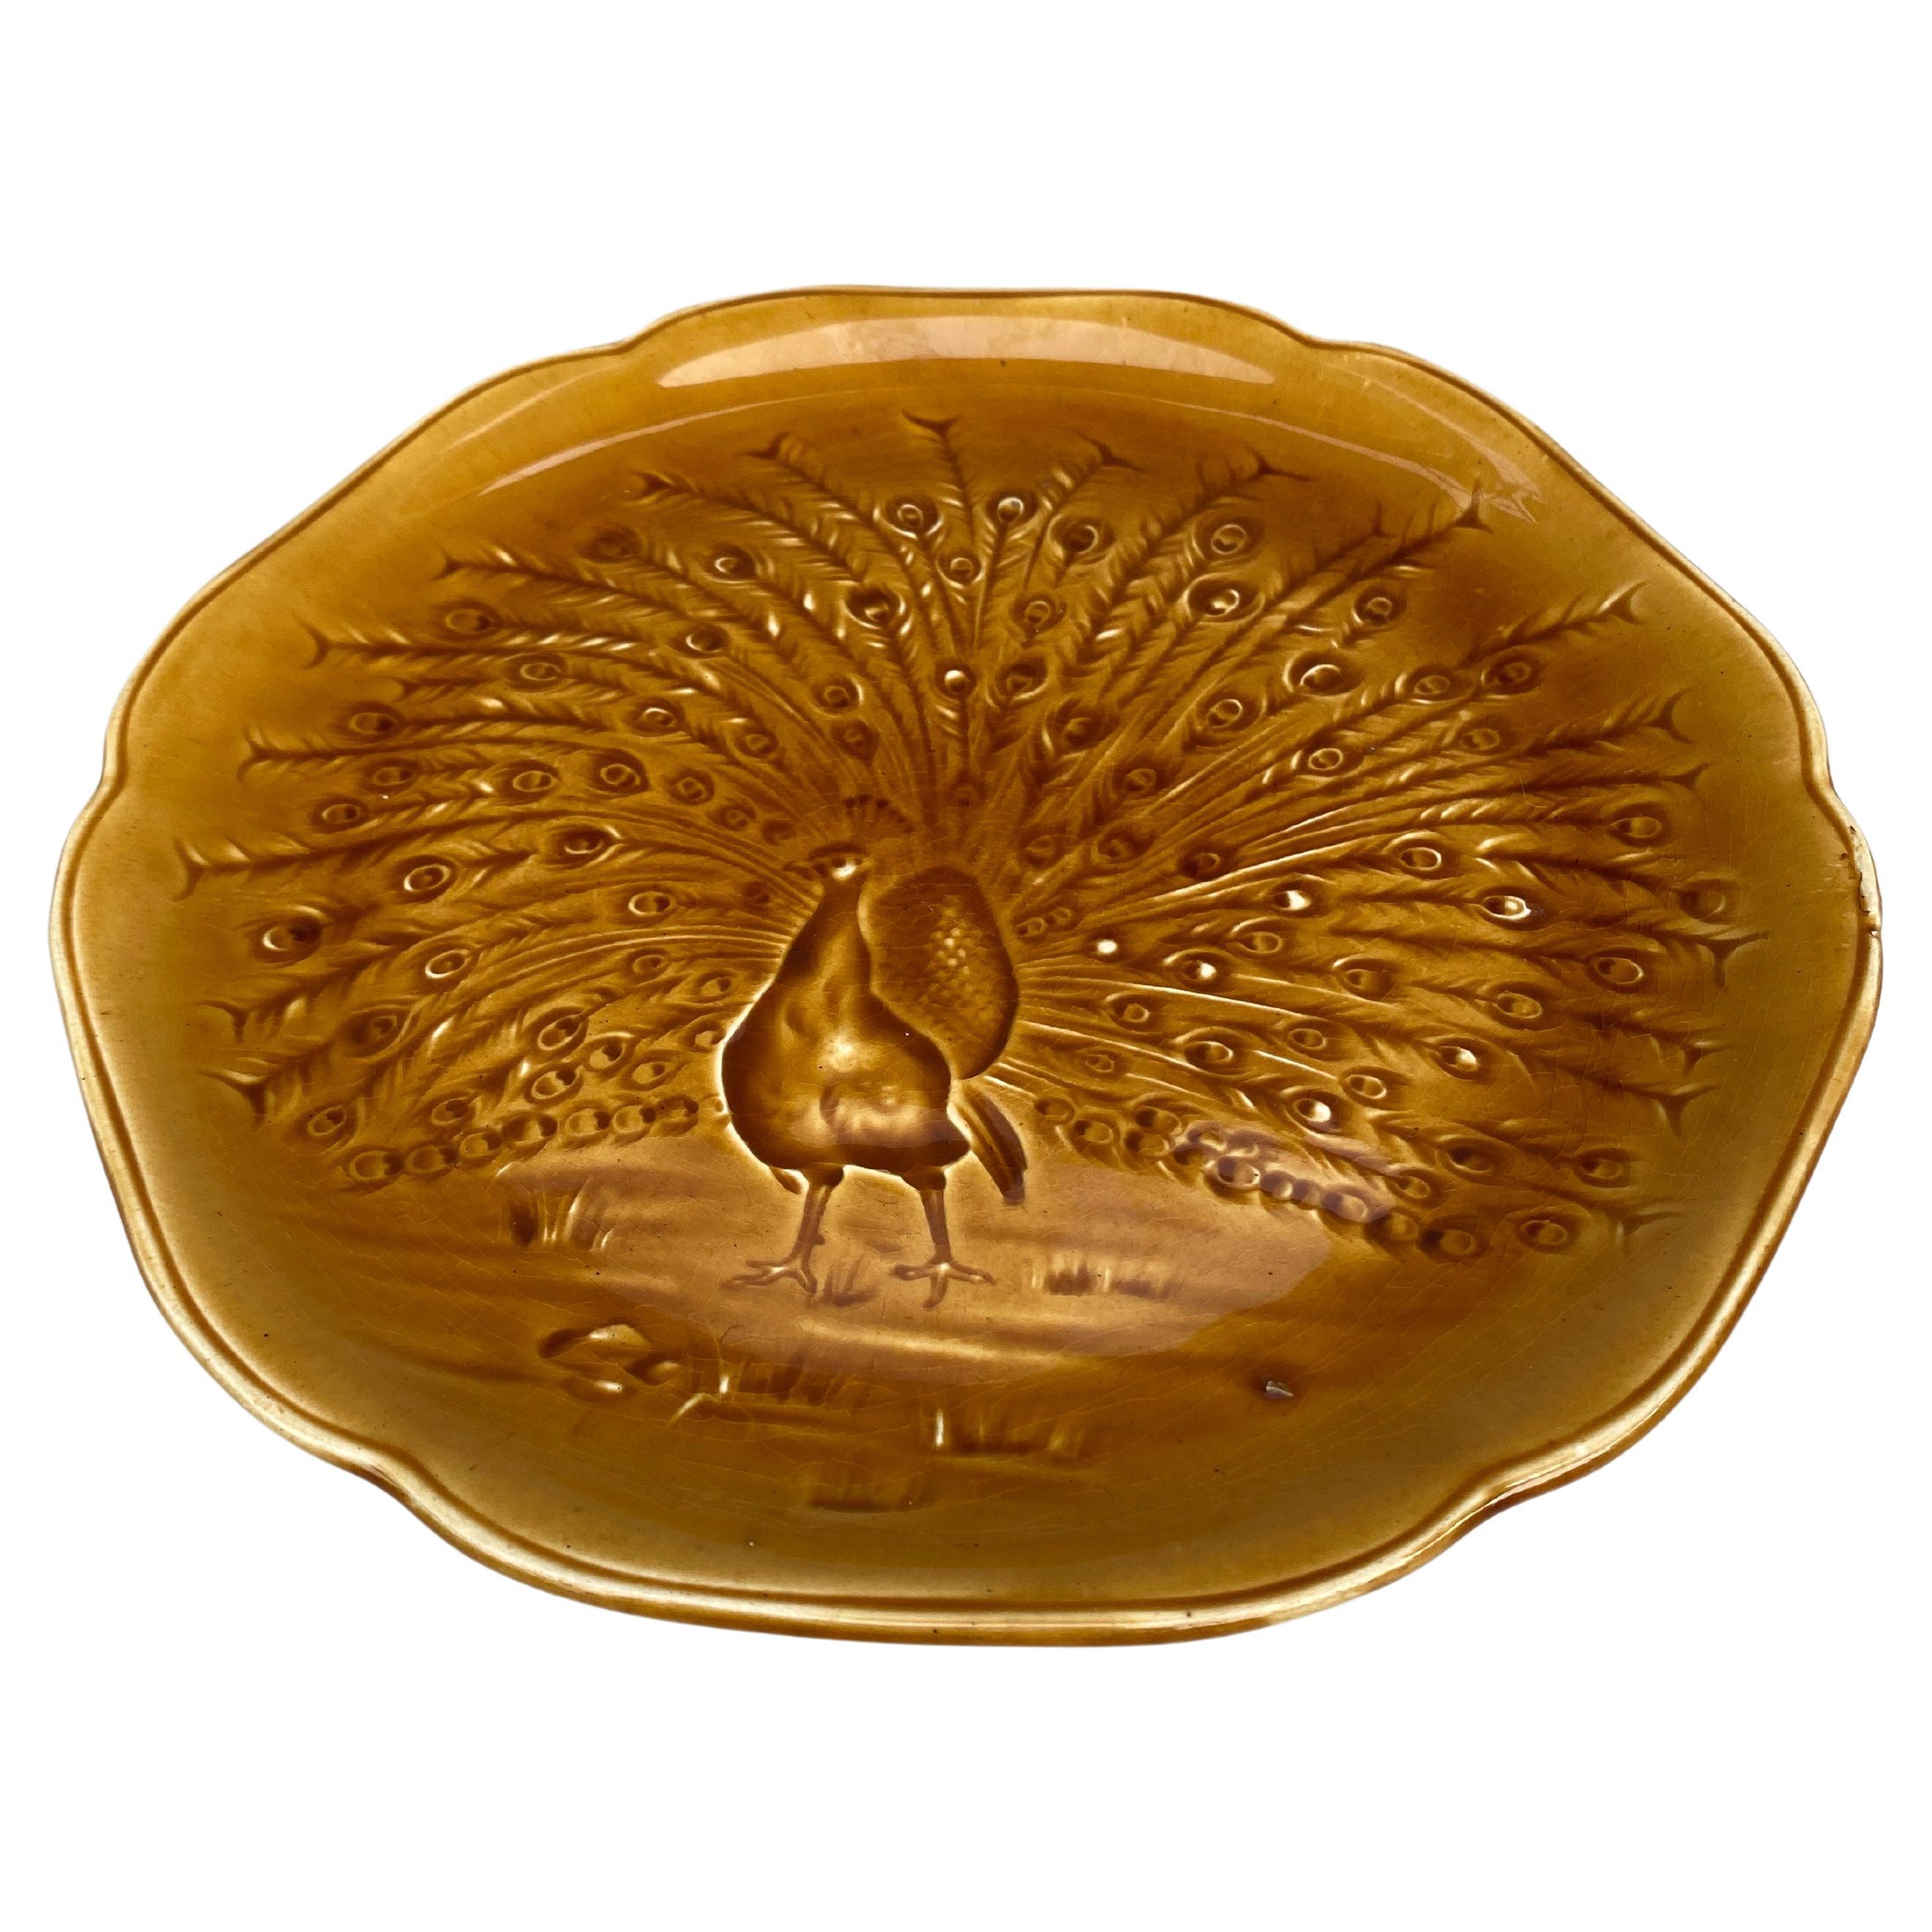 Assiette en majolique moutarde Goldenrold avec un paon signé Hippolyte Boulenger Choisy-le-Roi, circa 1890.
La manufacture de Choisy-le-Roi était l'une des plus importantes à la fin du 19ème siècle, elle produisait des céramiques de très haute